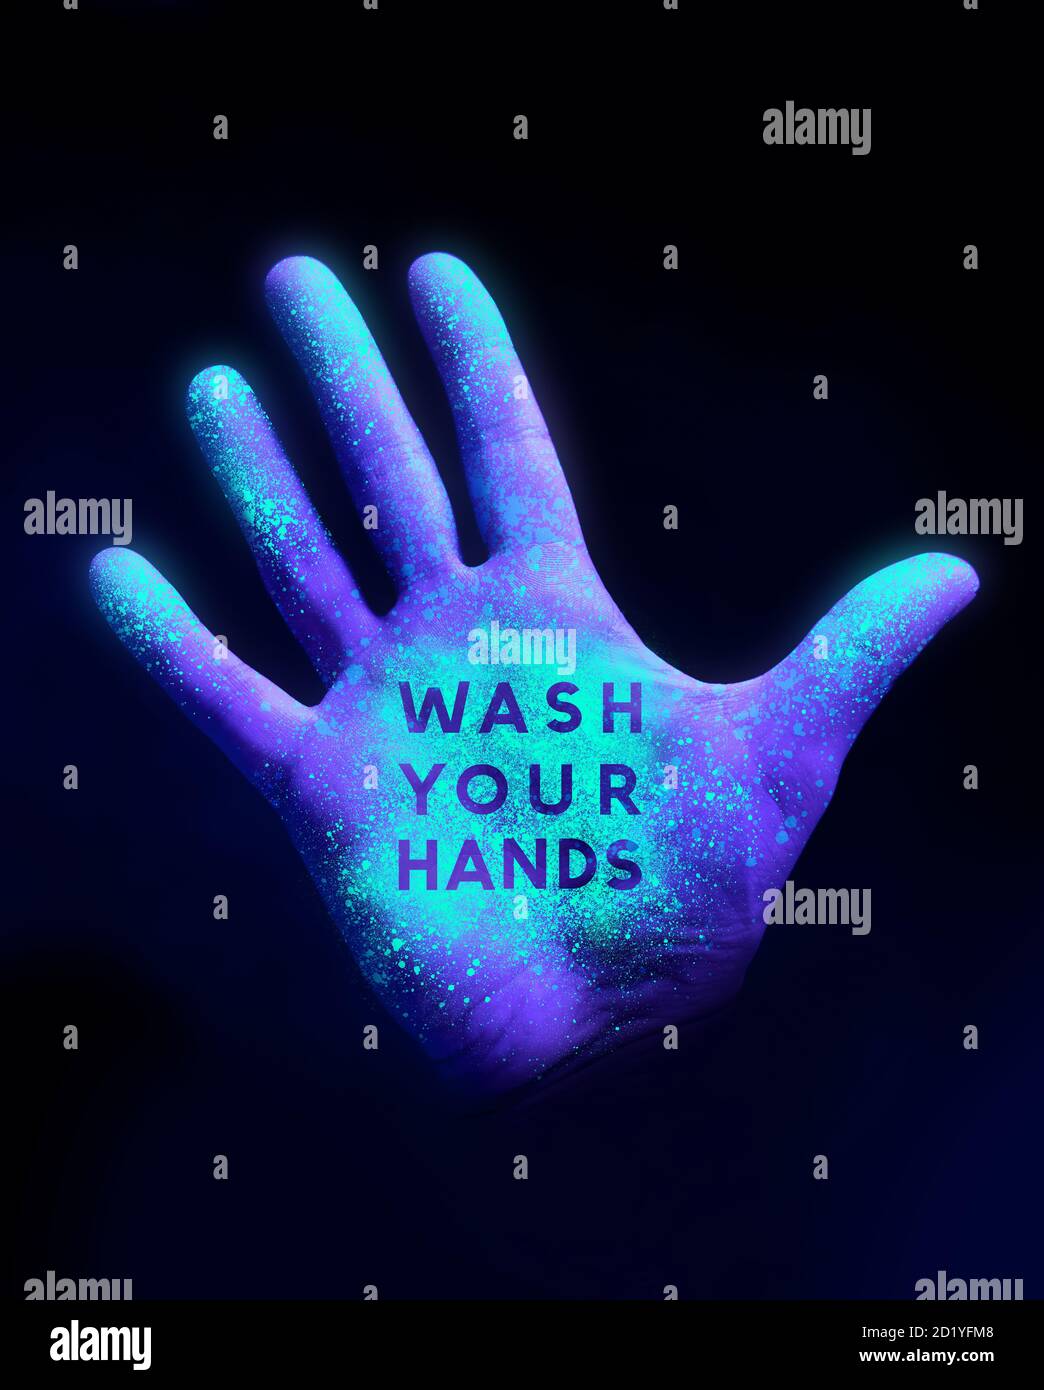 Stoppen Sie die Ausbreitung von Desease. Eine menschliche Hand leuchtet aus UV-UV-UV-Licht zeigt Bakterien und Viren. Waschen Sie Ihre Hände Konzept. Stockfoto